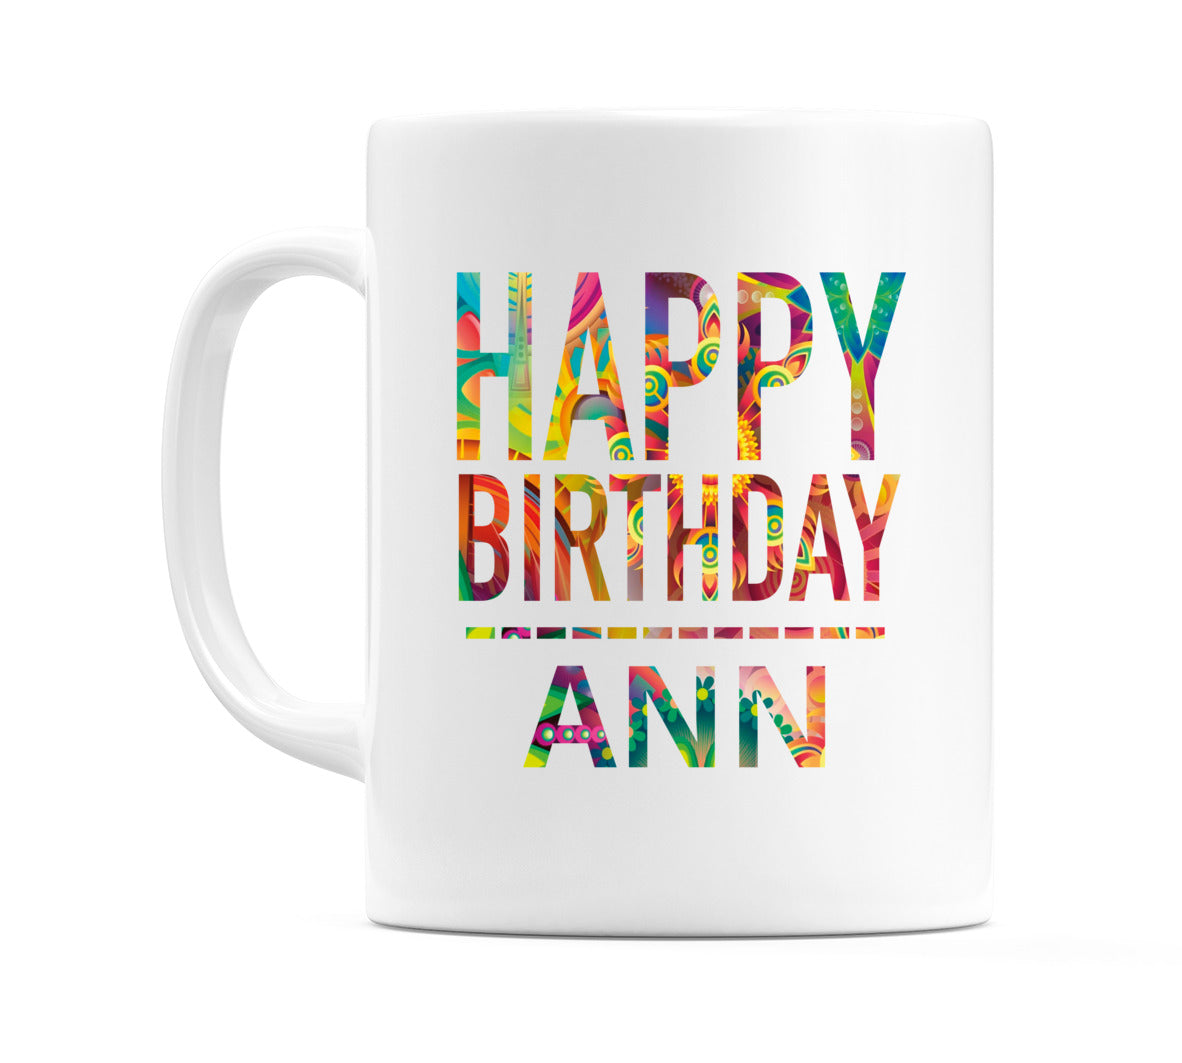 Happy Birthday Ann (Tie Dye Effect) Mug Cup by WeDoMugs